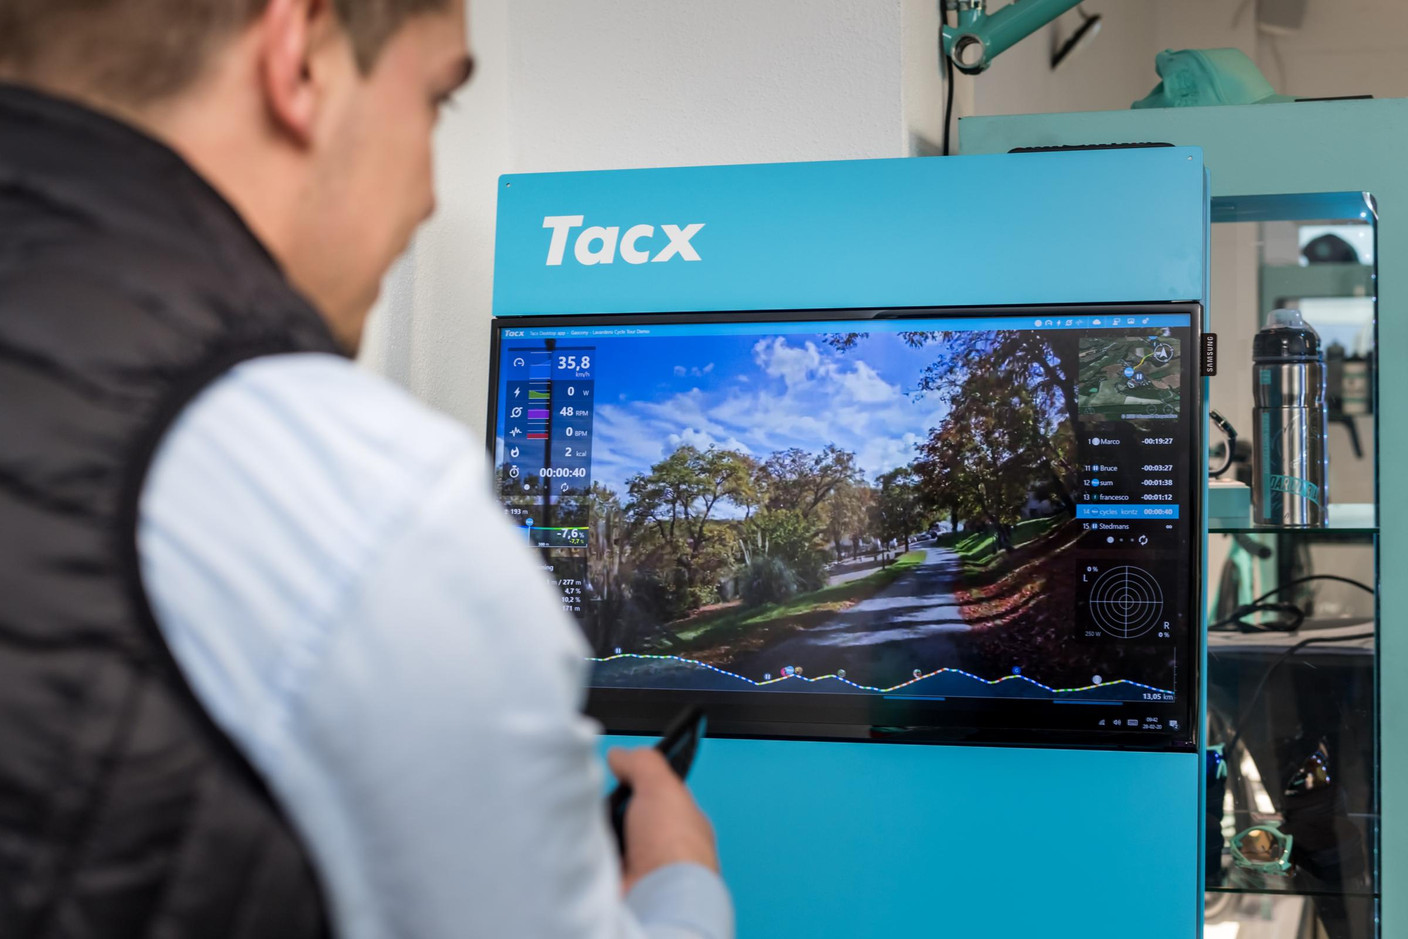 L’entraînement se prolonge aussi en intérieur avec un système baptisé Tacx. (Photo: Nader Ghavami)